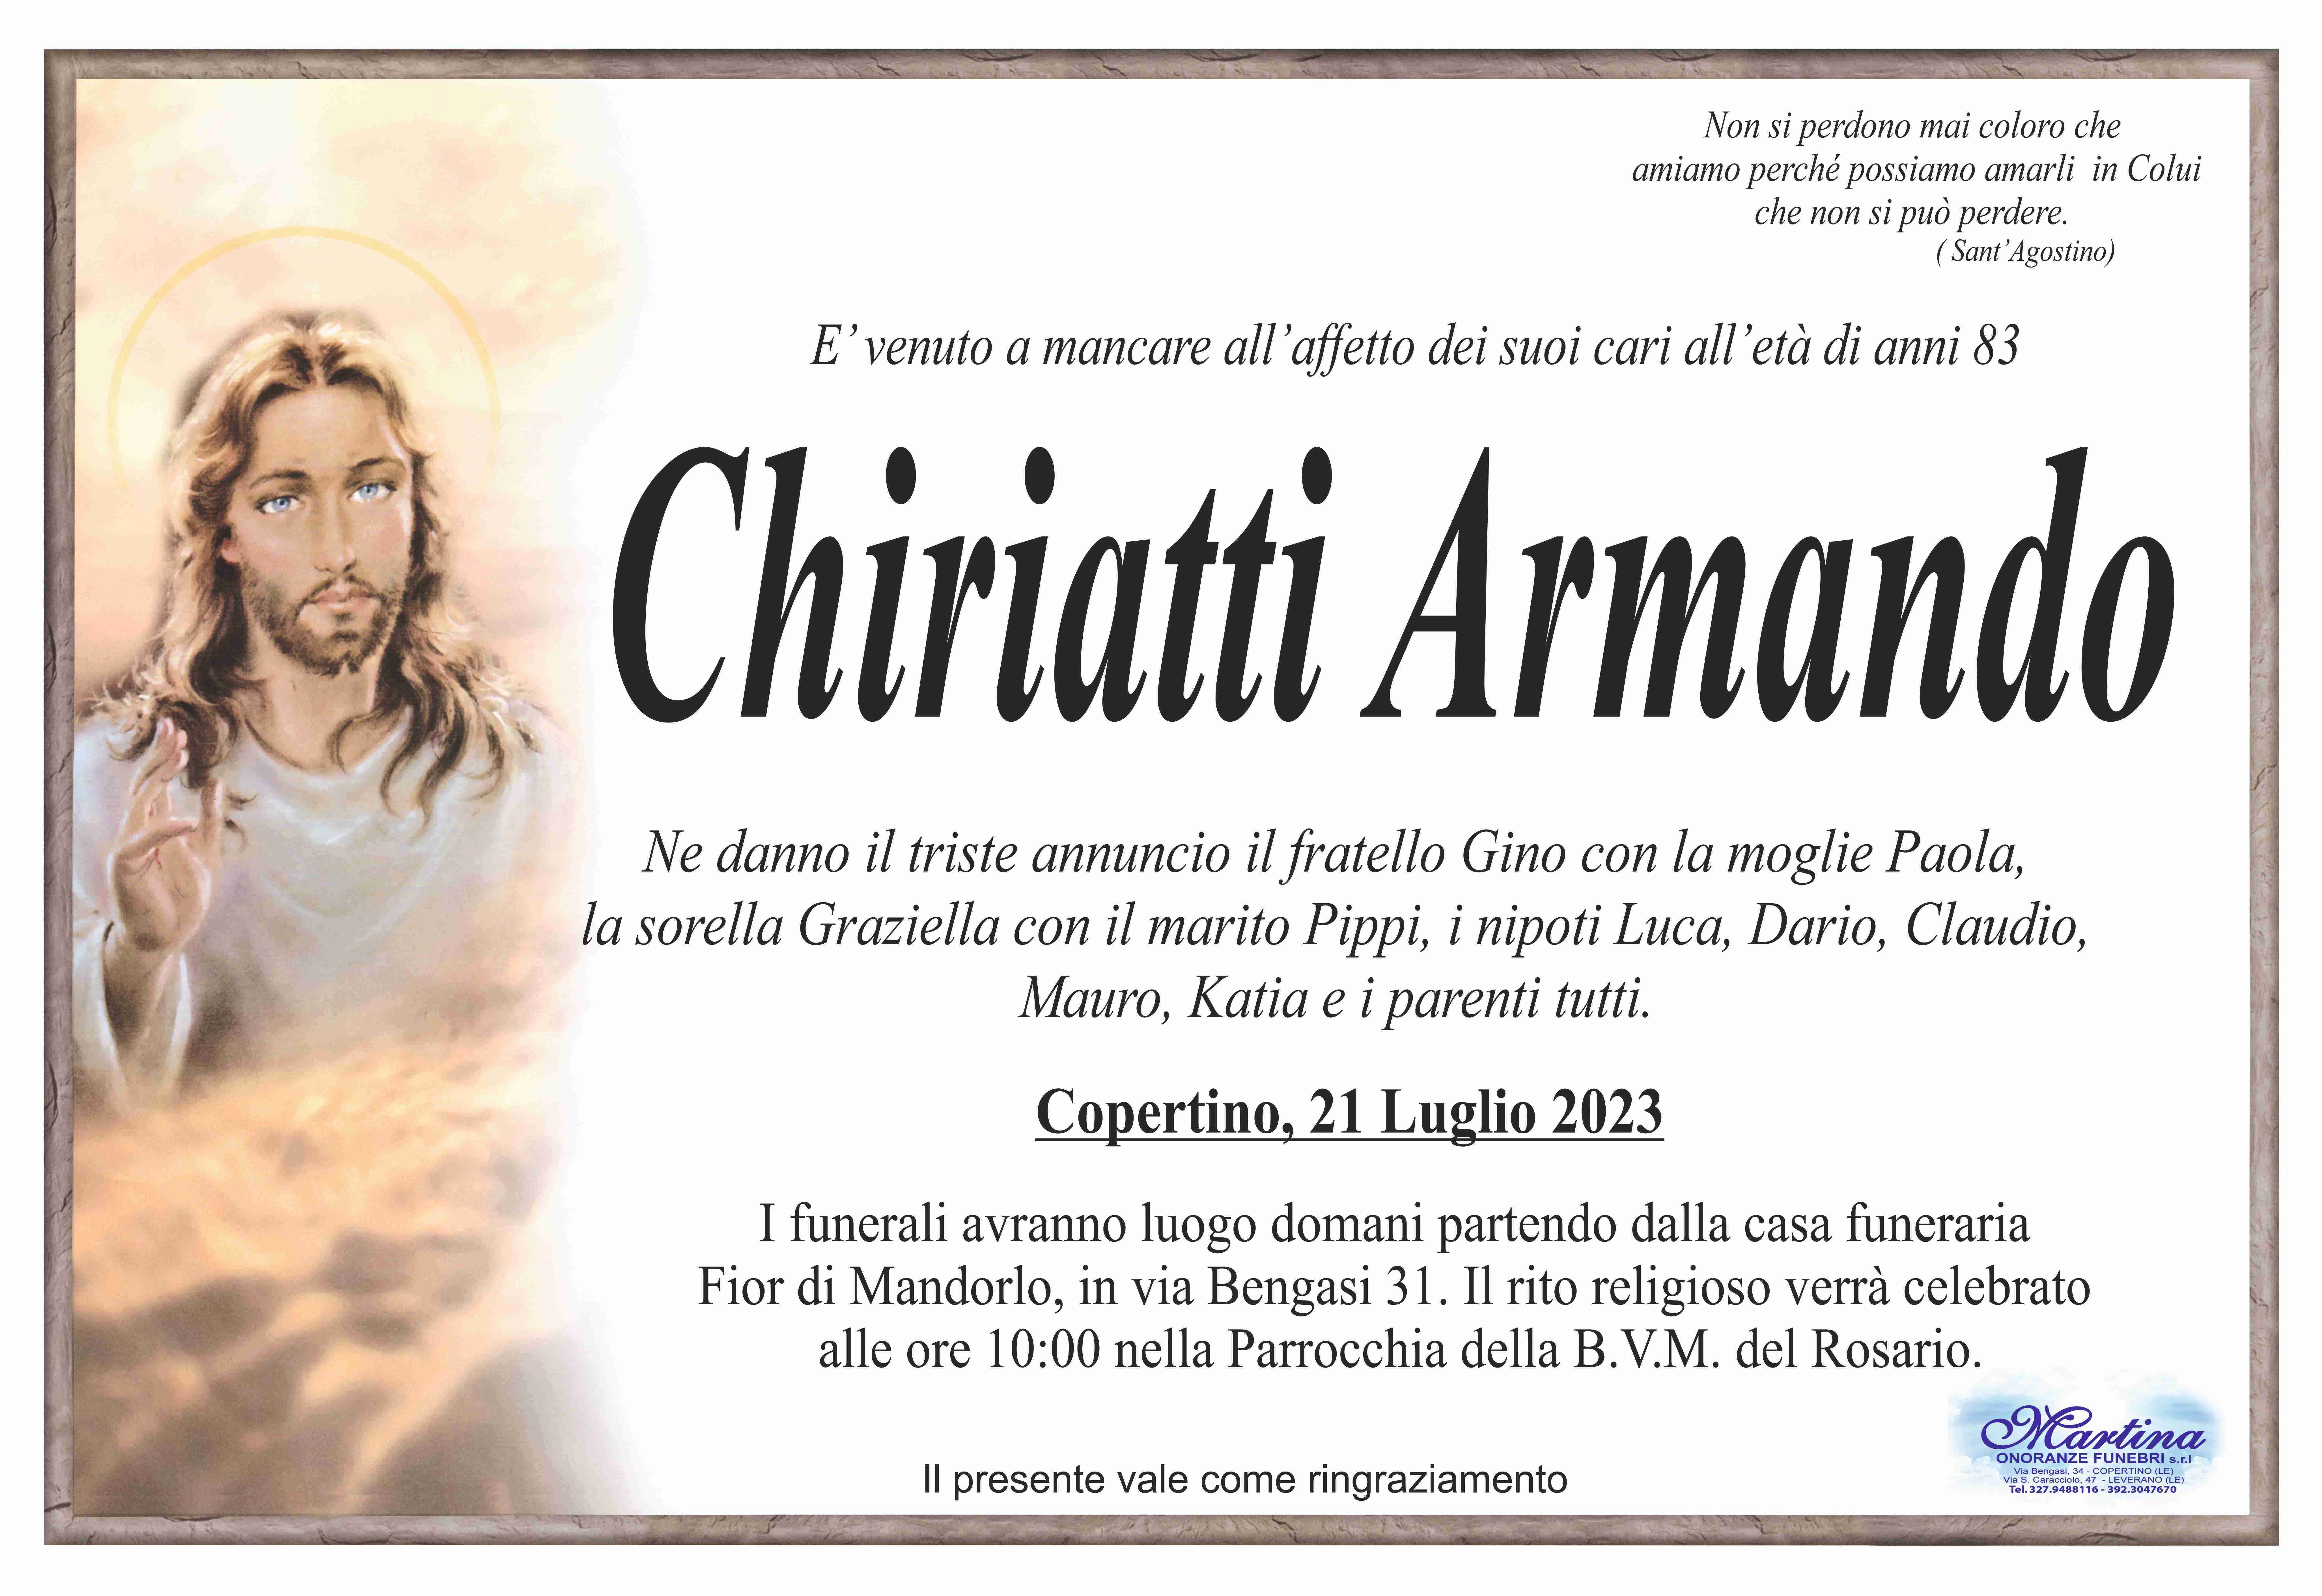 Armando Chiriatti